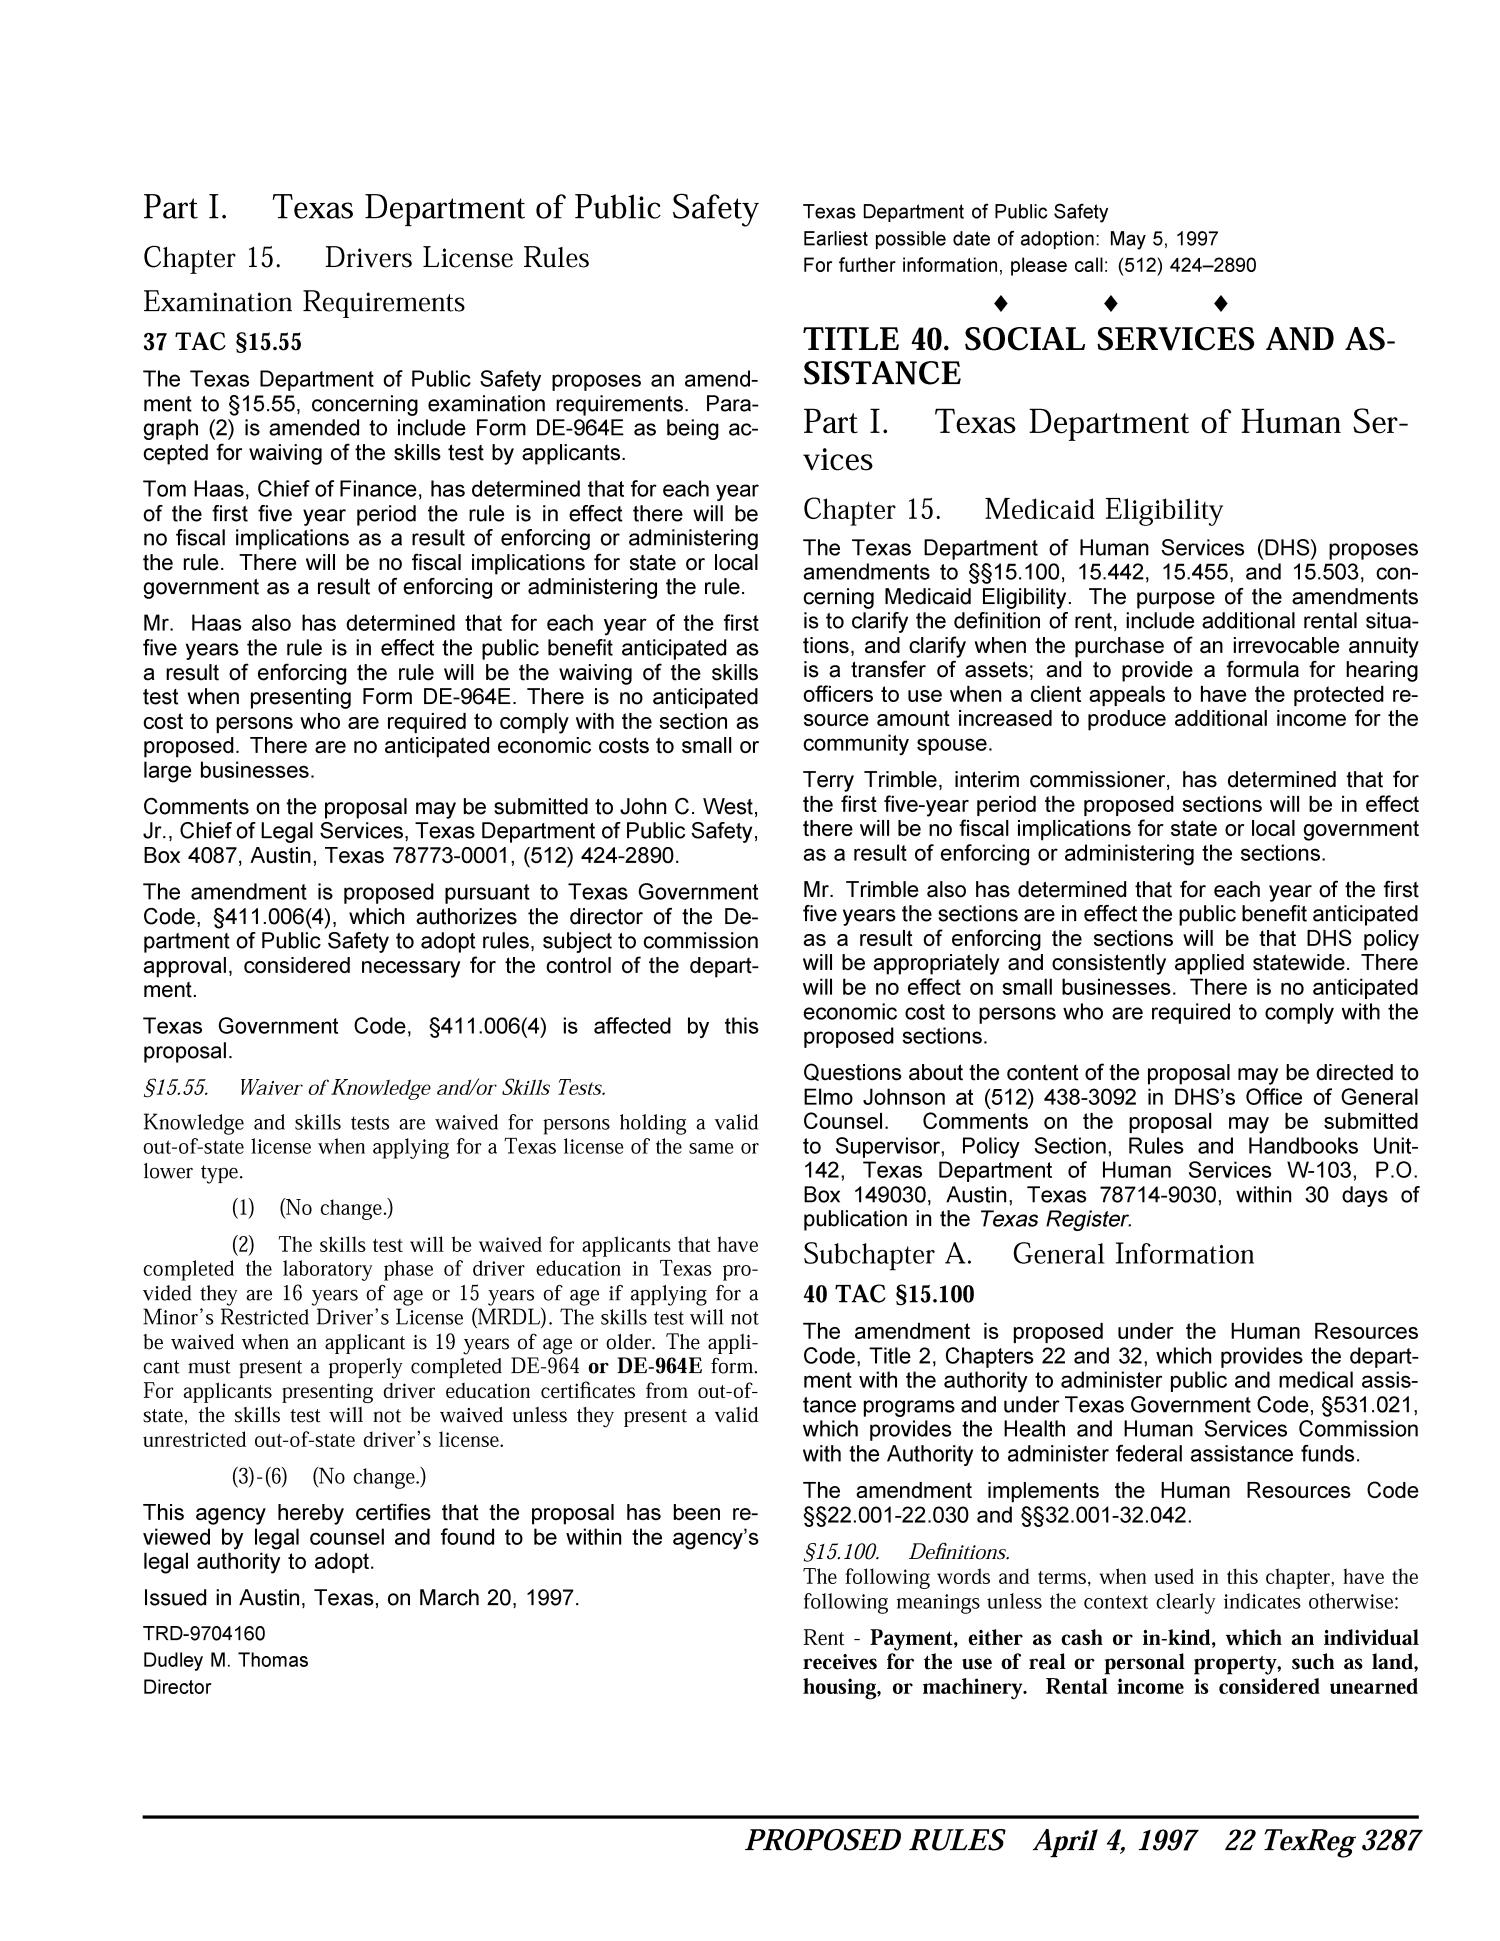 texas-register-volume-22-number-26-pages-3267-3340-april-4-1997